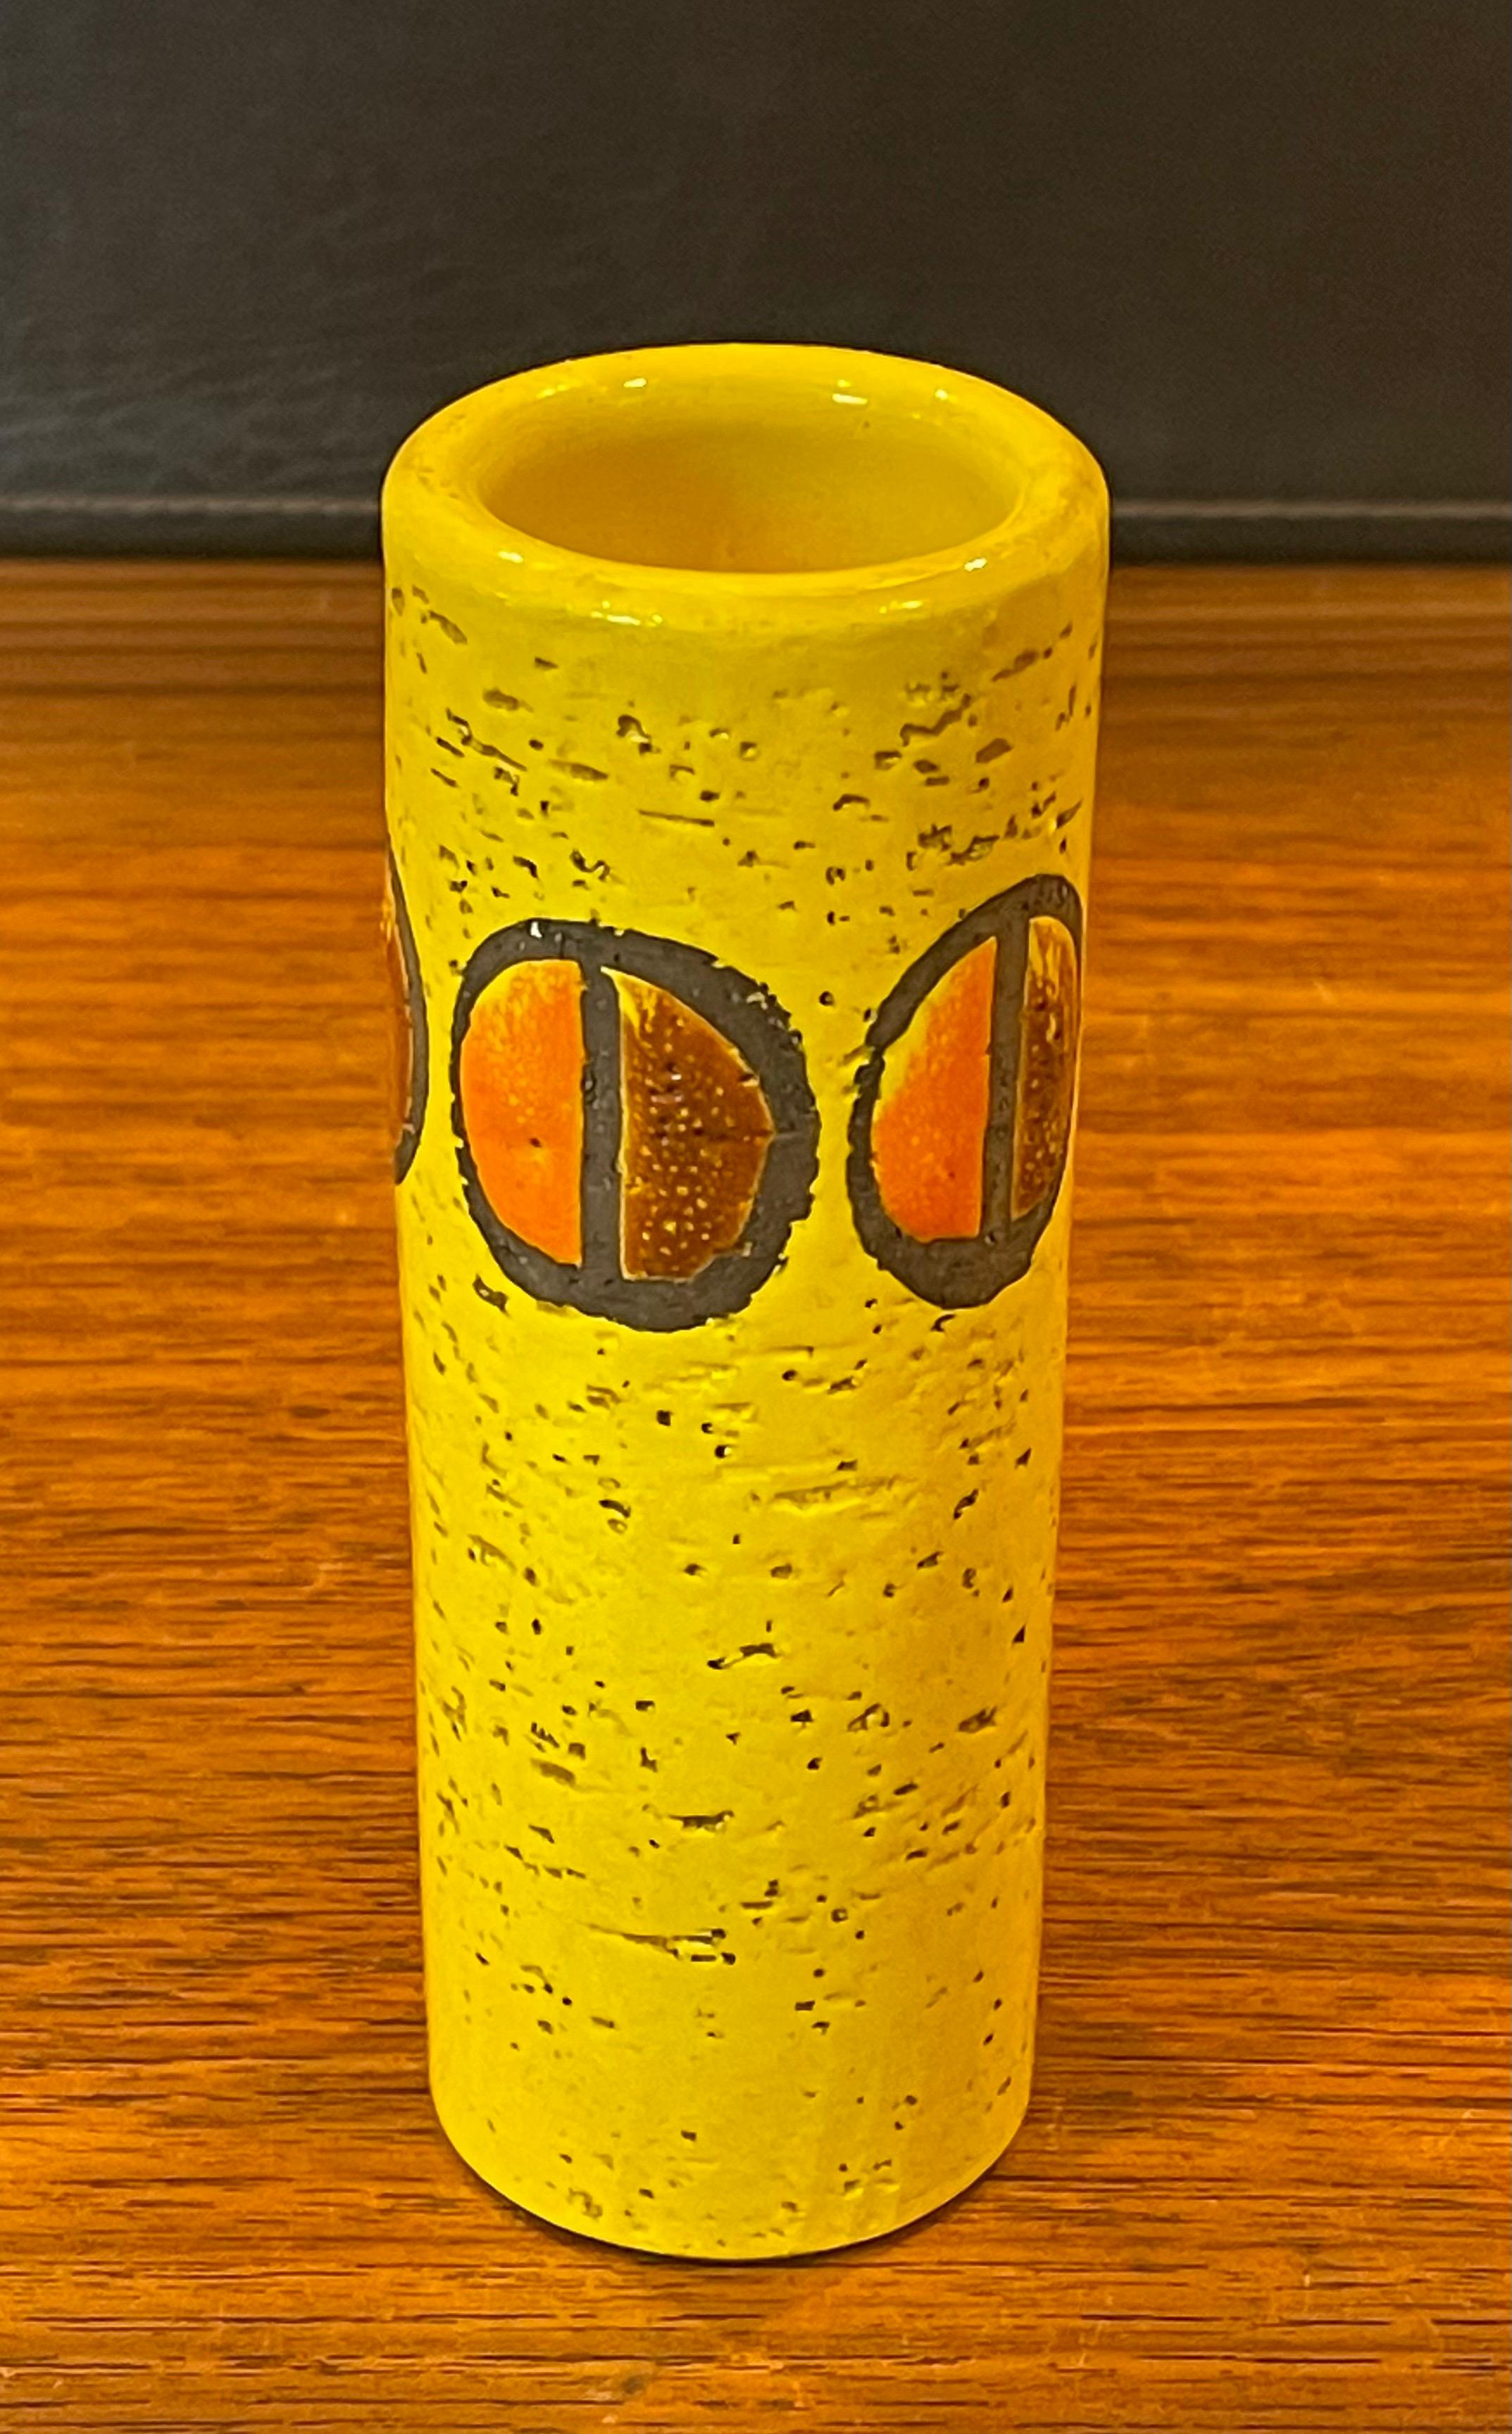 Magnifique petit vase jaune Bitossi MCM par Rosenthal Netter, vers les années 1960. Le vase jeté à la main est en excellent état, sans fissures ni éclats ; il mesure 2,25